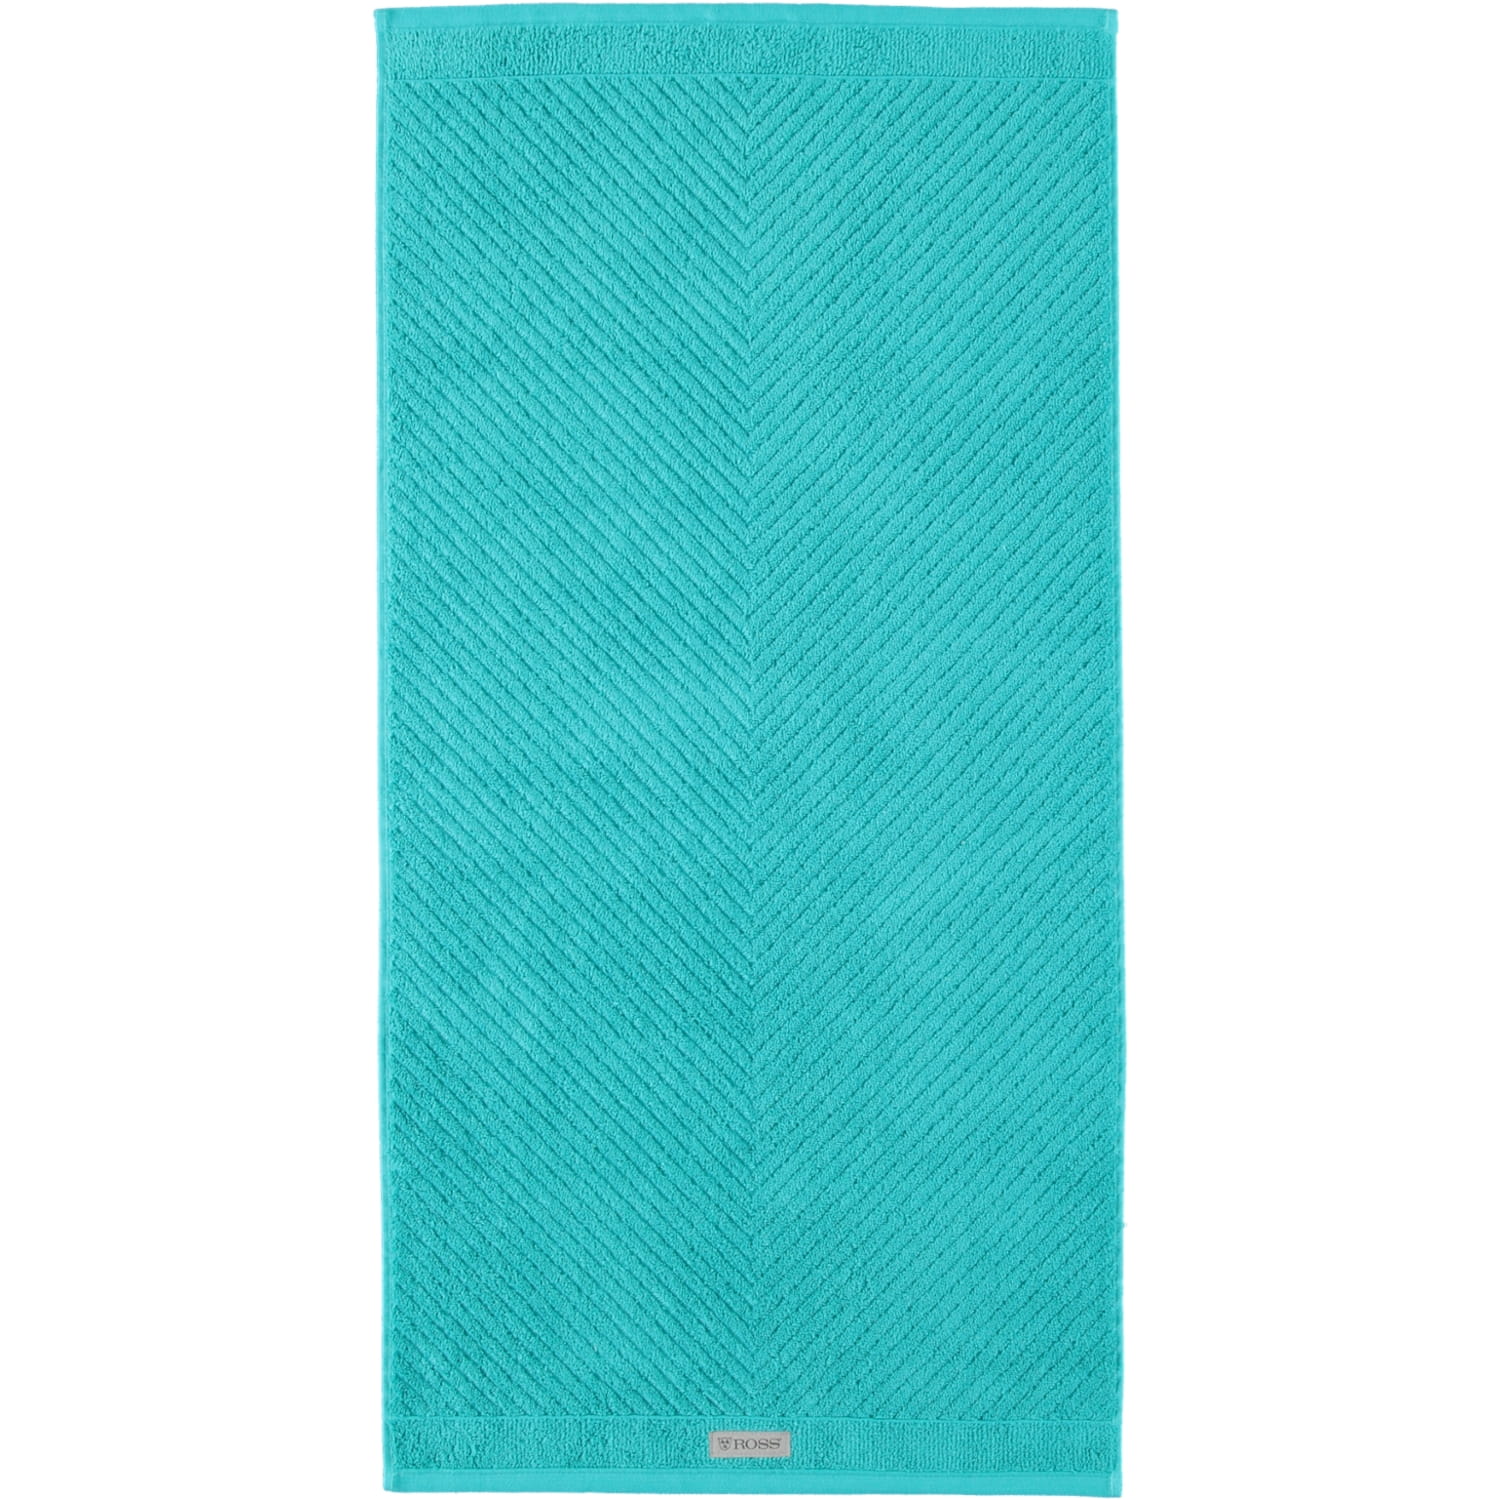 | | - 39 smaragd Ross Smart Handtücher Farbe: 4006 - Ross | Marken Ross